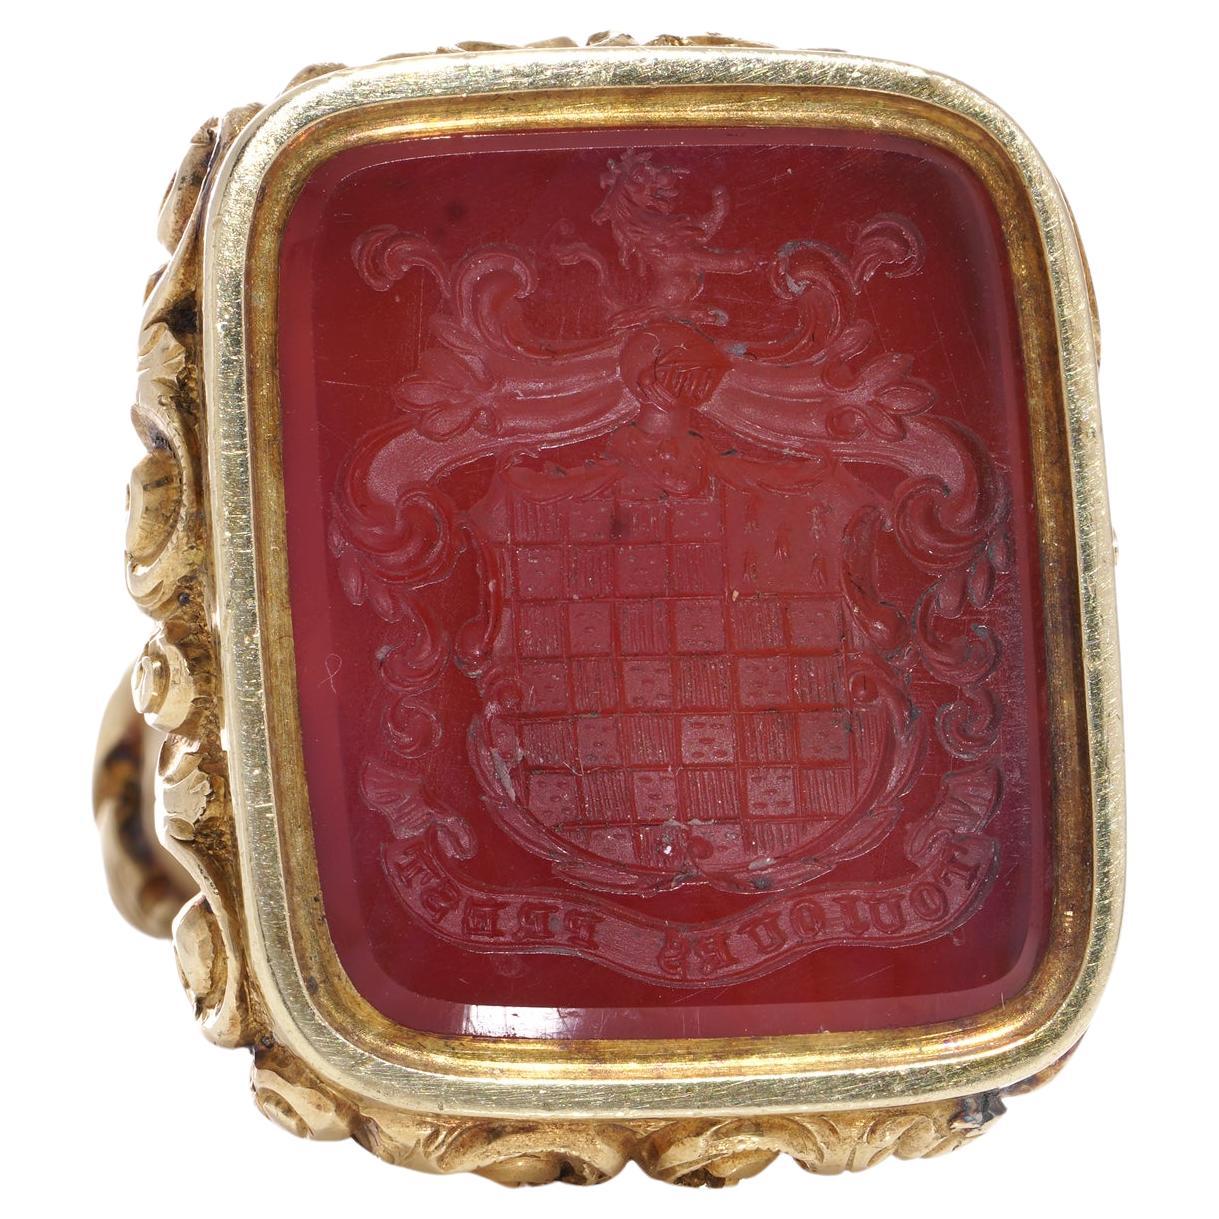 Ce porte-sceau/pendentif ancien du XIXe siècle, en or jaune de 15 carats, présente une intaille en cornaline représentant ce qui pourrait être le blason de la famille ou du clan Carmichael, ainsi que l'expression française 